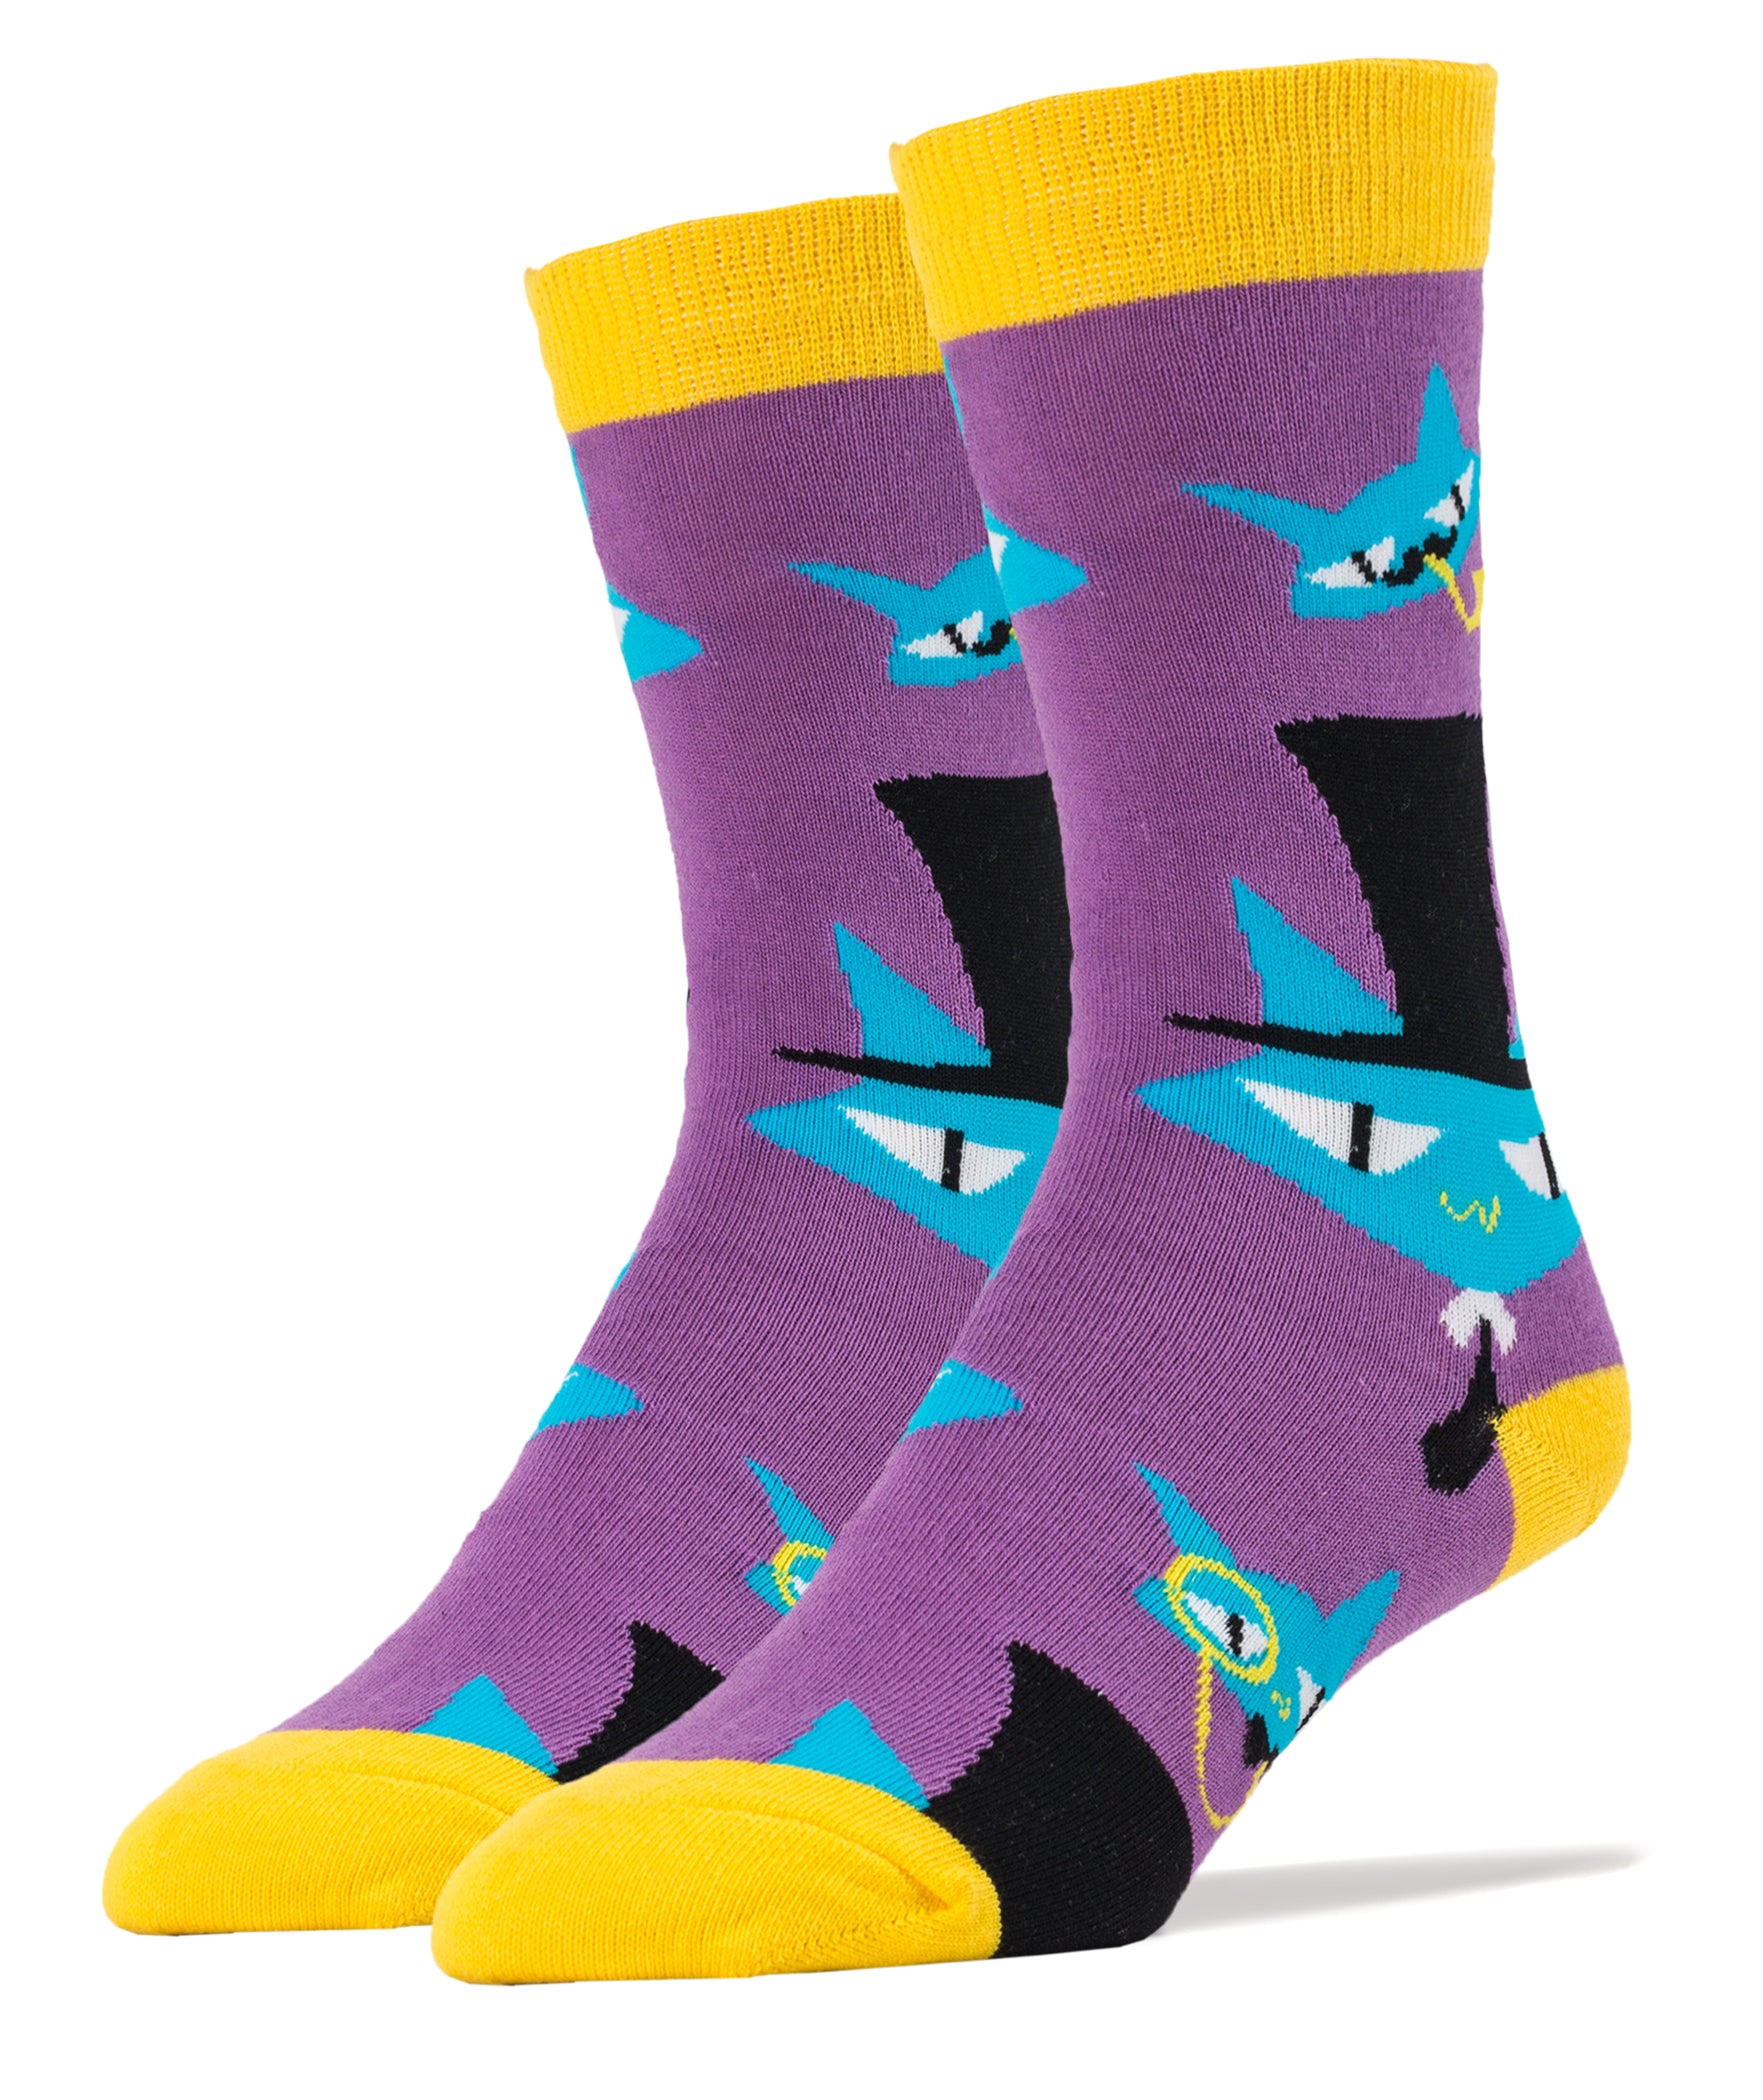 Cat Loaf Men's Socks  Funny Novelty Cat Socks for Him - Cute But